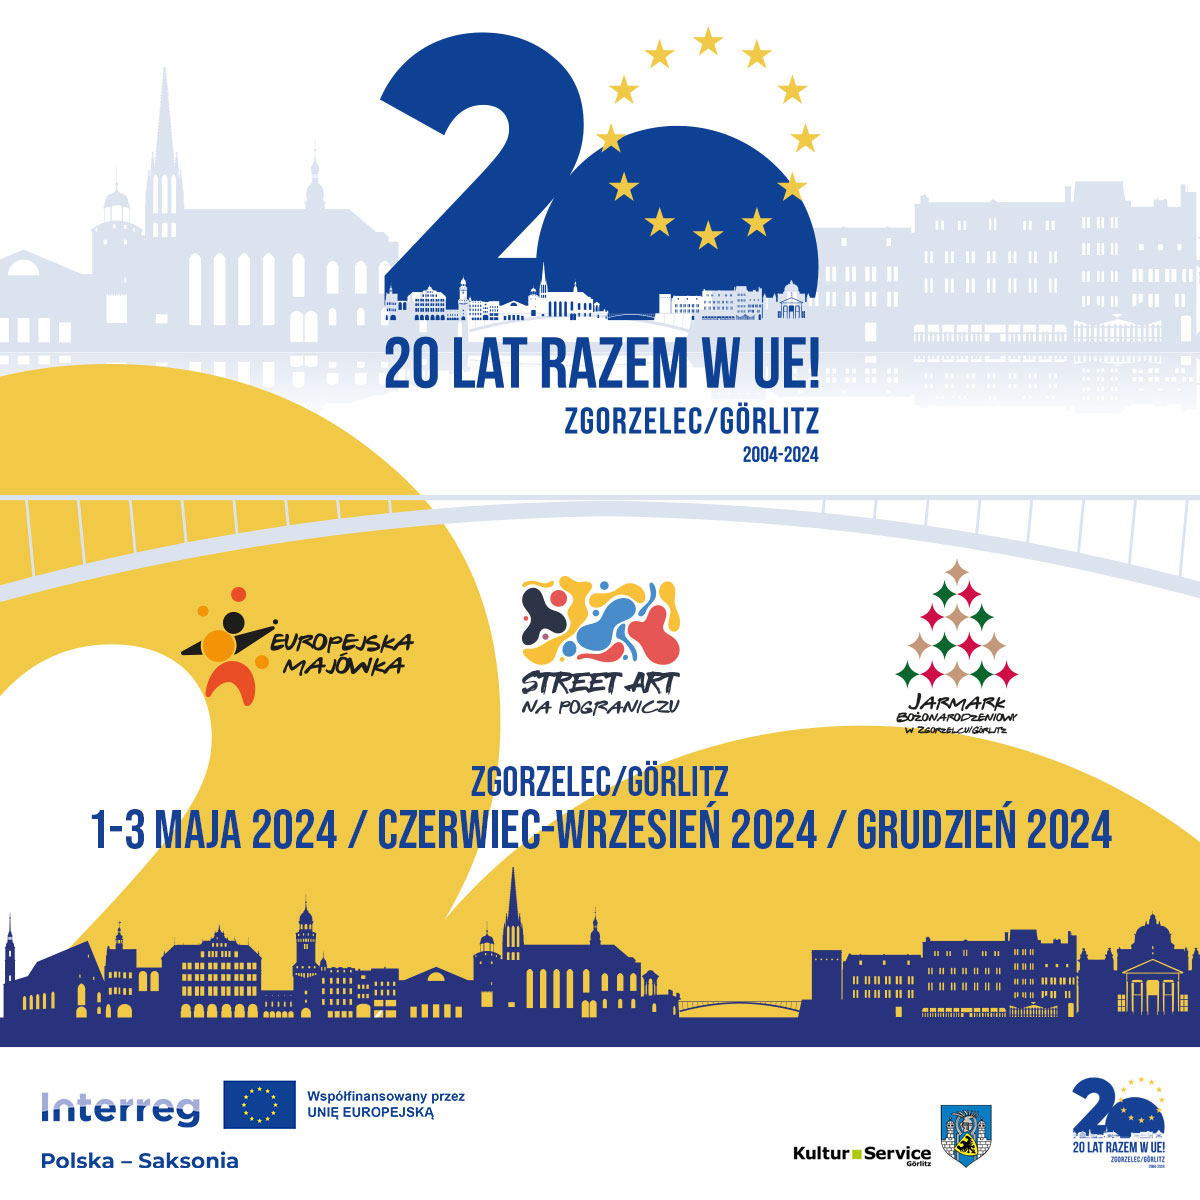 You are currently viewing 20 LAT RAZEM W UE! – świętowanie w Zgorzelcu i Gӧrlitz